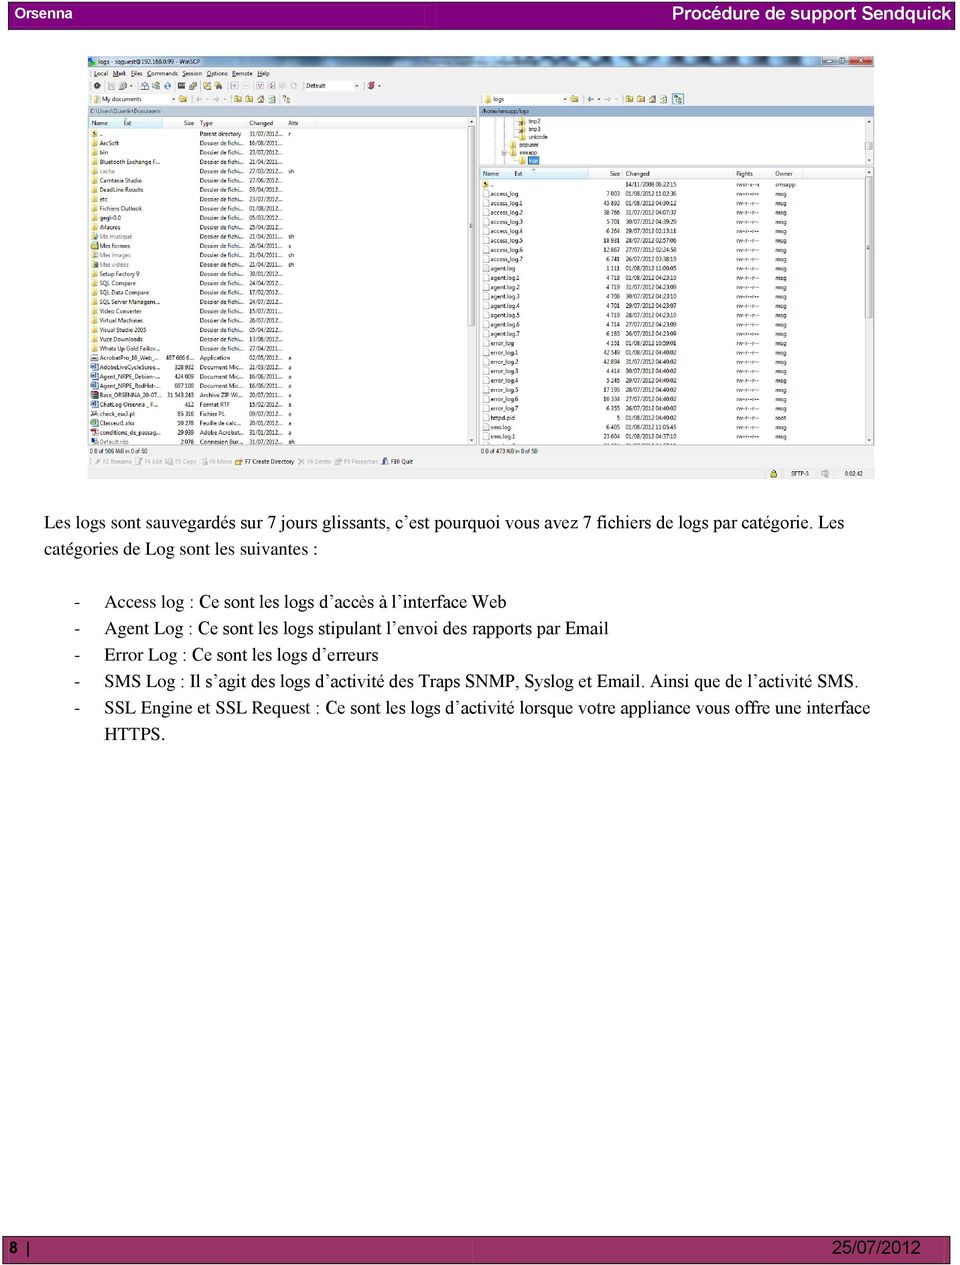 stipulant l envoi des rapports par Email - Error Log : Ce sont les logs d erreurs - SMS Log : Il s agit des logs d activité des Traps